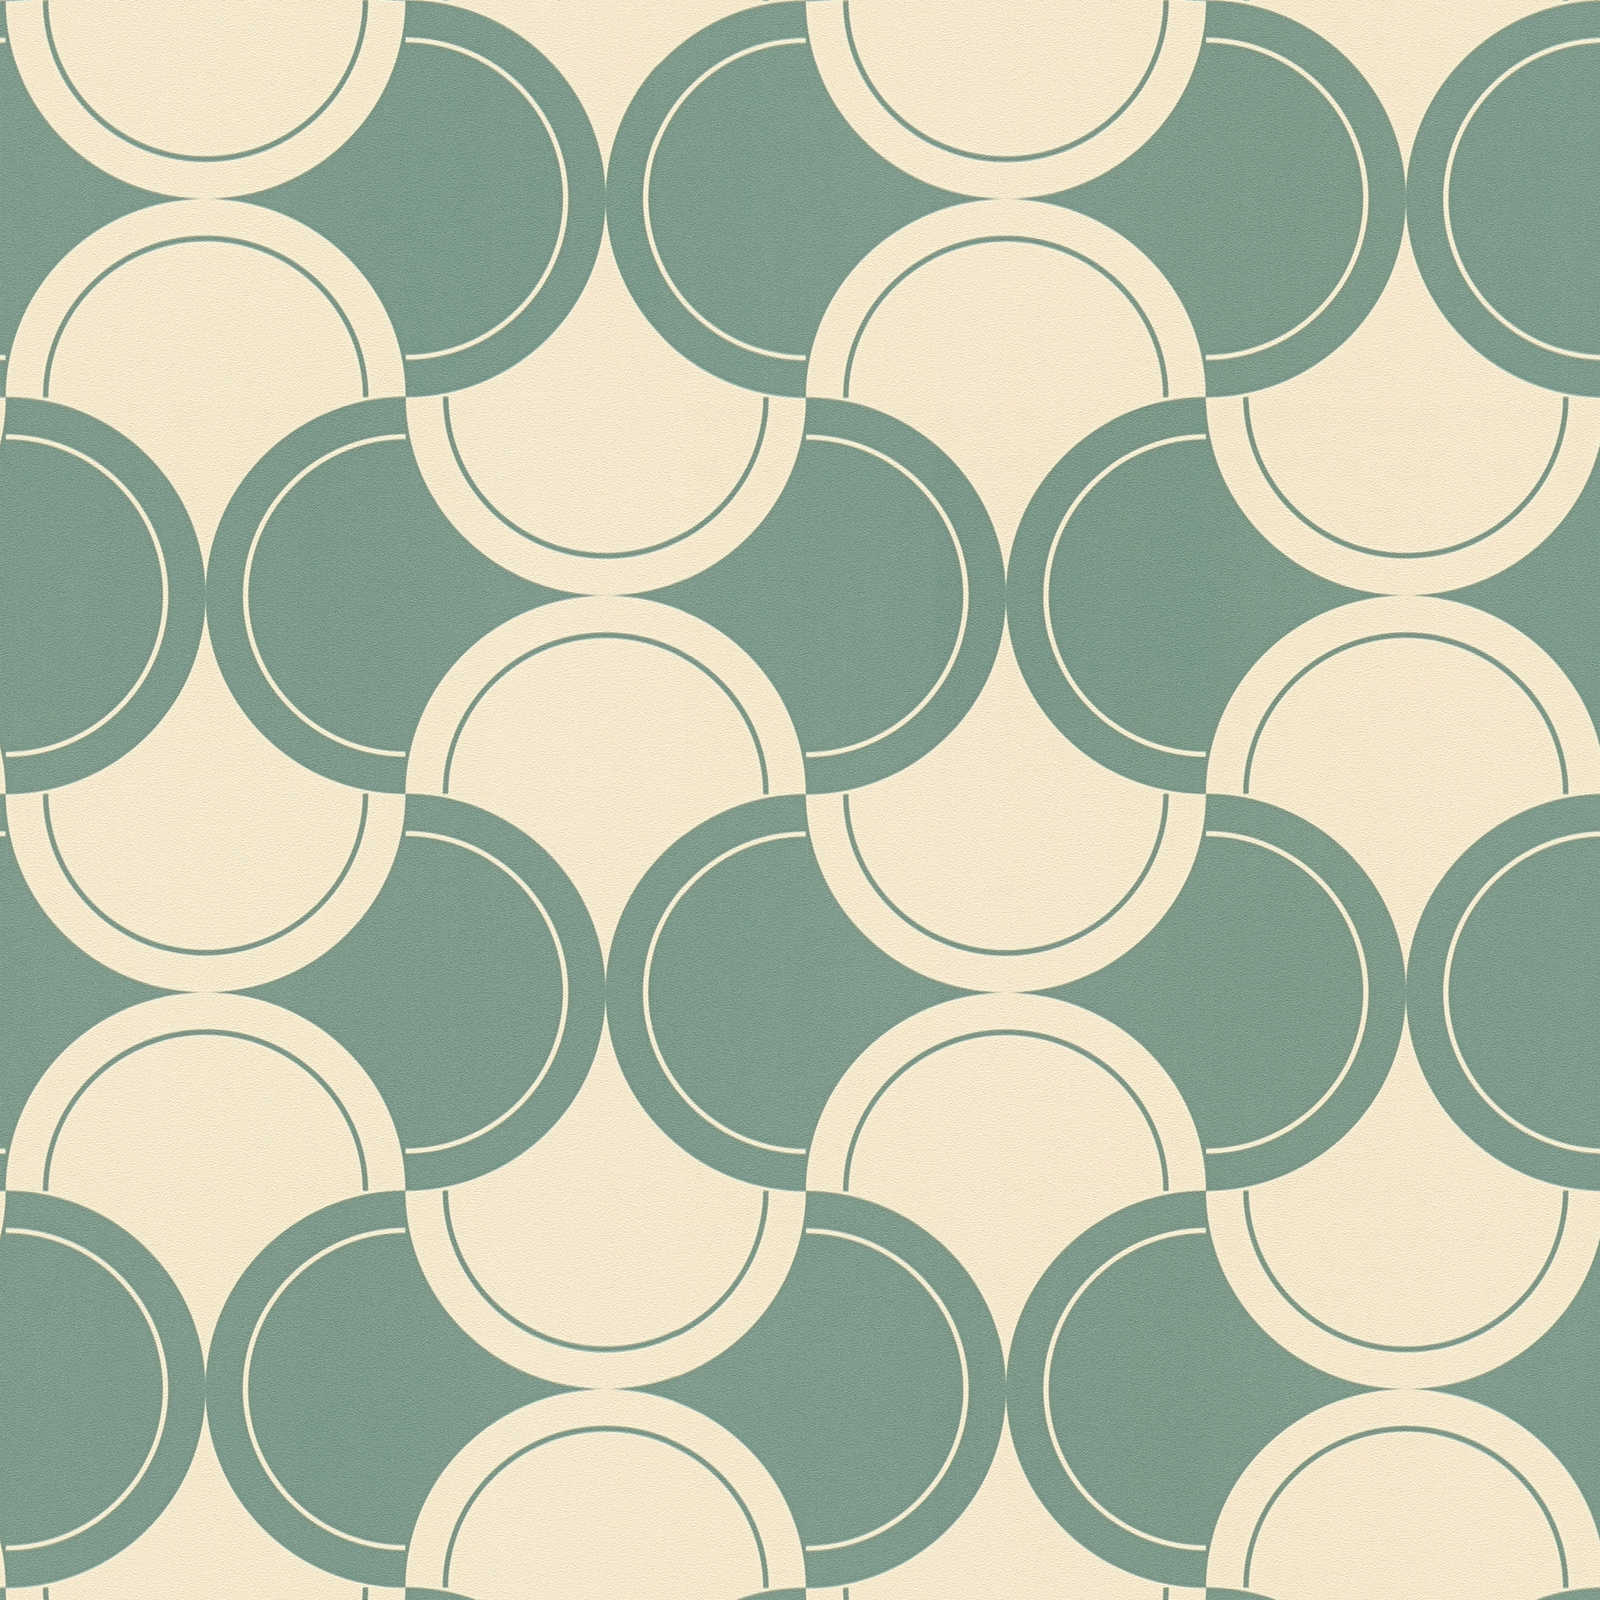             Vliesbehang met halfcirkelvormig patroon in jaren 70 stijl - groen, beige
        